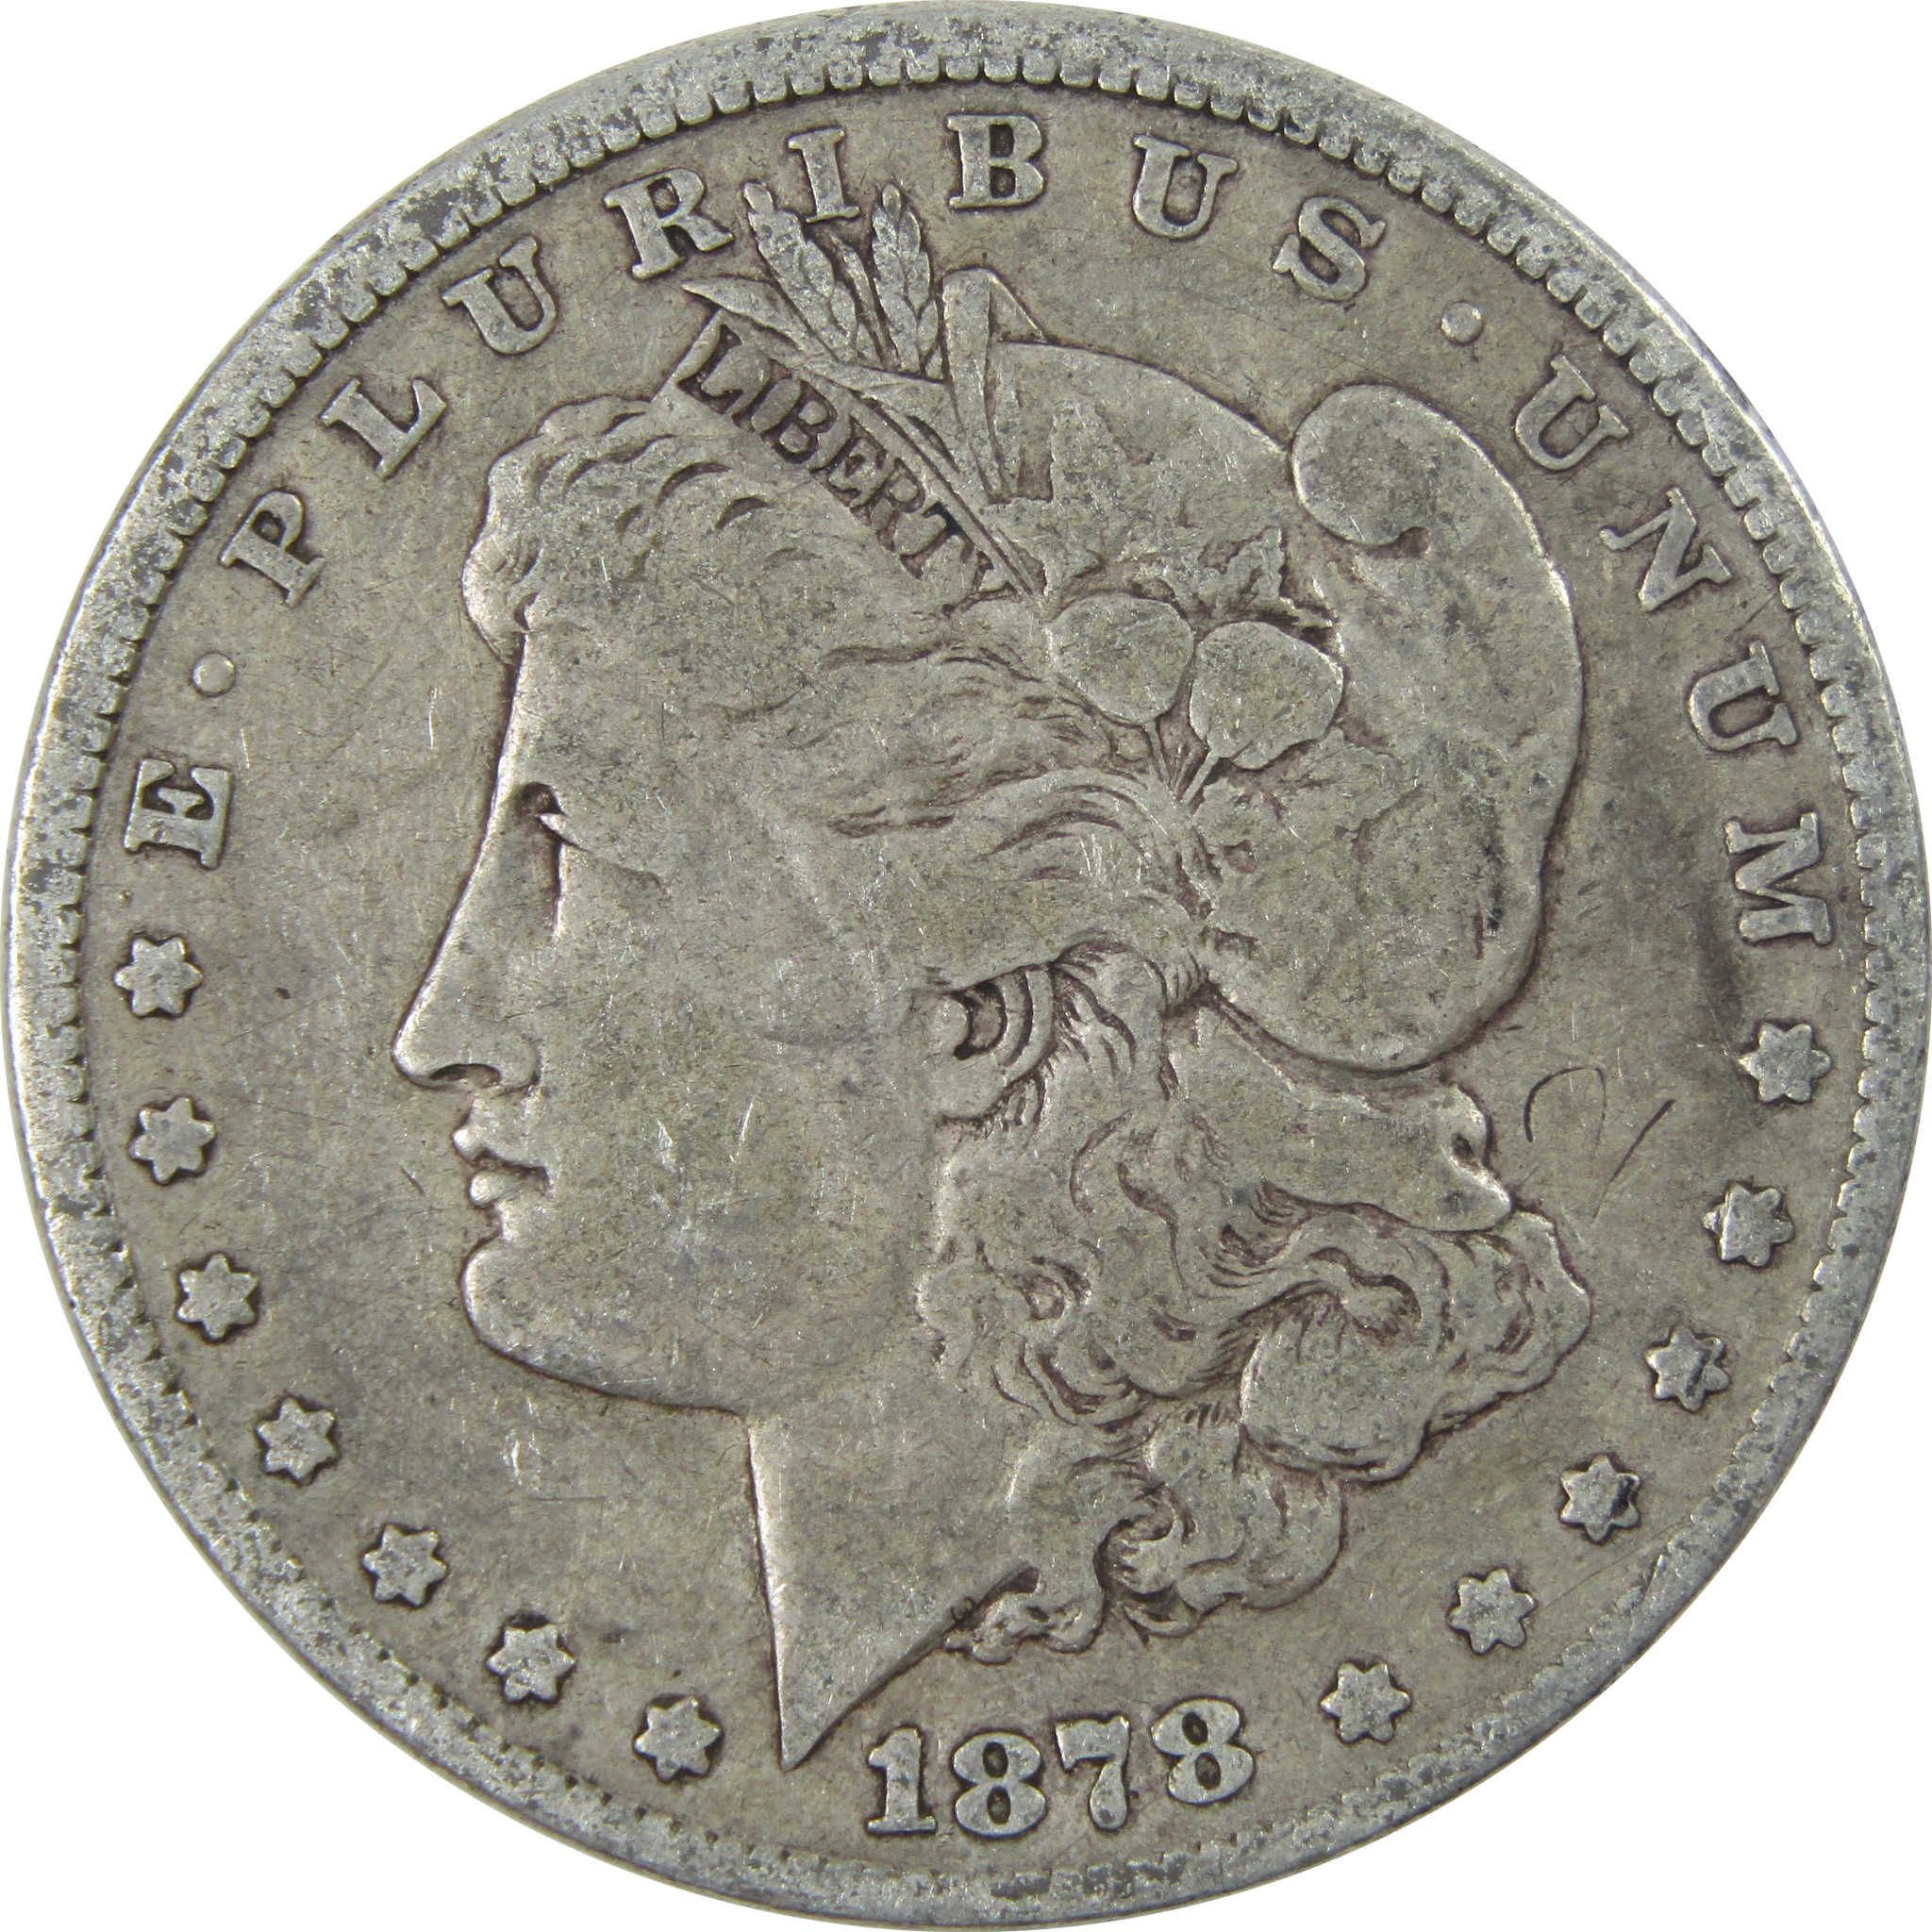 1878 7TF Rev 78 Morgan Dollar VG Very Good Silver $1 Coin SKU:I13916 - Morgan coin - Morgan silver dollar - Morgan silver dollar for sale - Profile Coins &amp; Collectibles